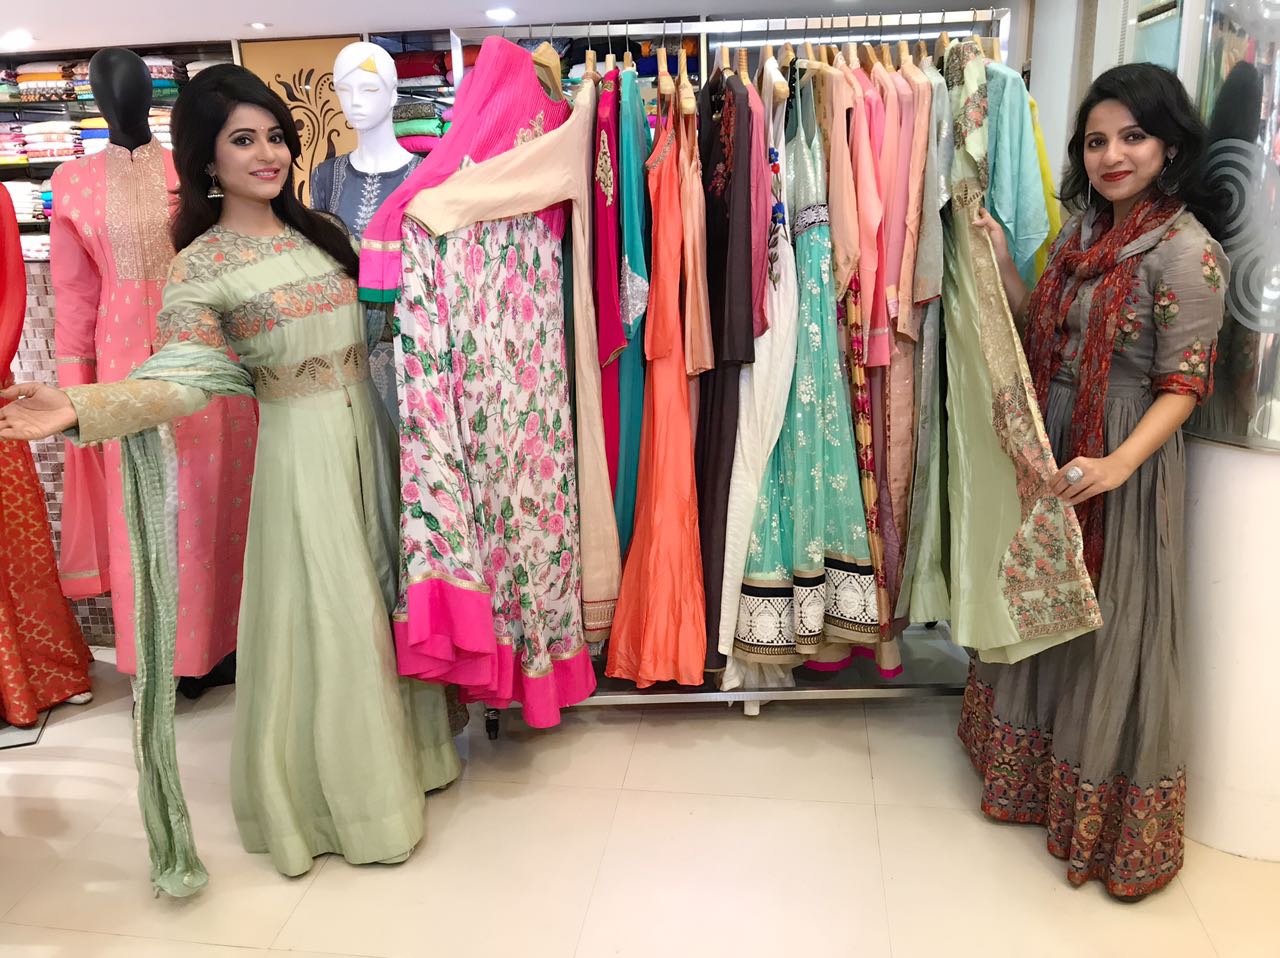 India TV Host Charul Malik wearing Nirali Suits Dress